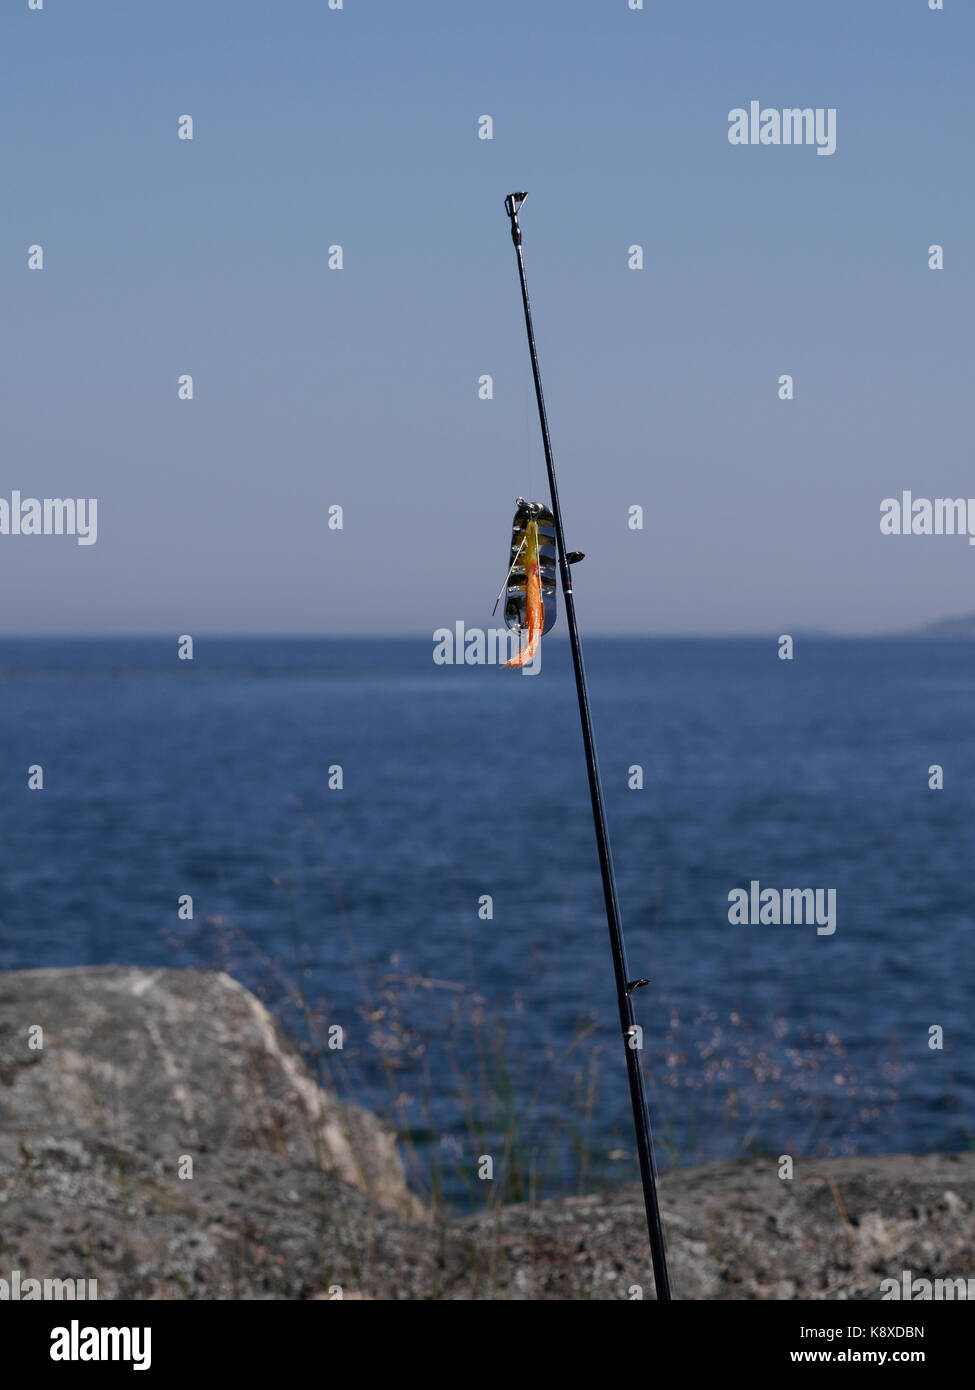 Canne à pêche avec lure, à l'extérieur de Räfsnäs, près de Gräddö, Rådmansö dans l'archipel de Roslagen au nord de Stockholm, Suède. Banque D'Images